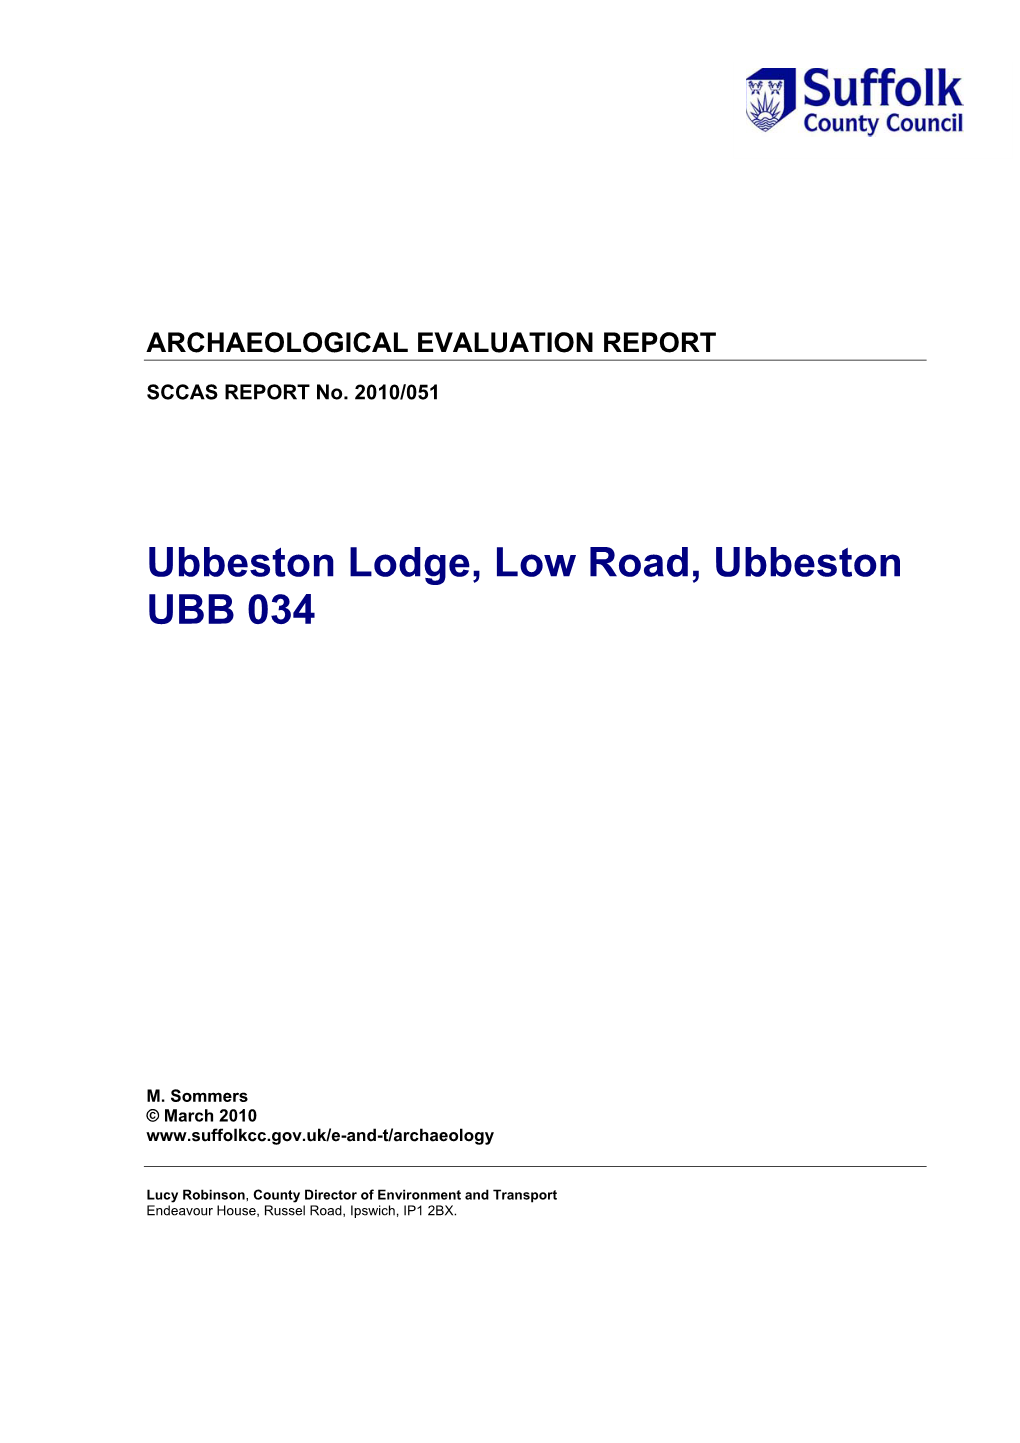 Ubbeston Lodge, Low Road, Ubbeston UBB 034